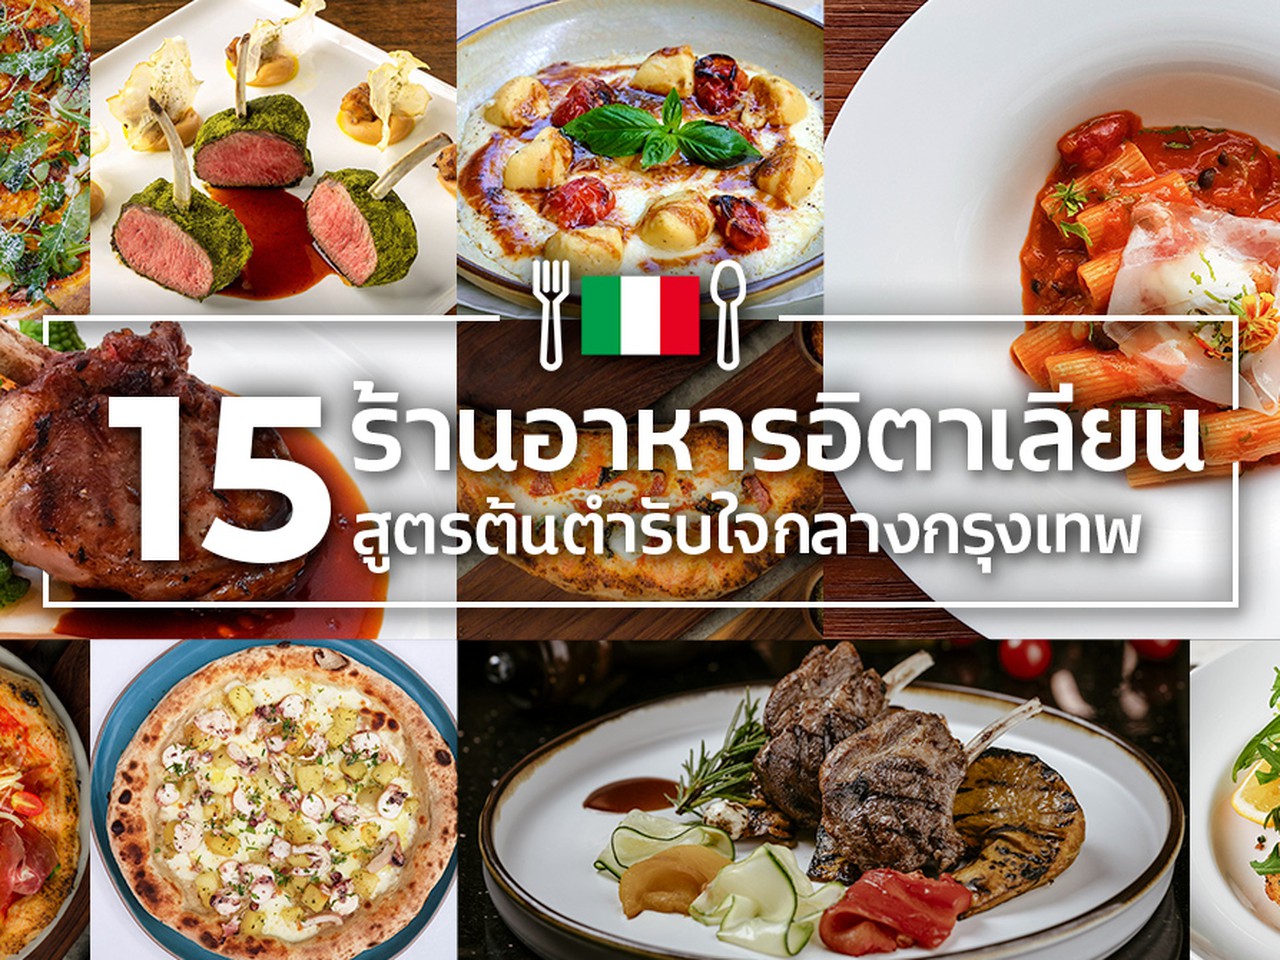 15 ร้านอาหารอิตาเลียนสูตรต้นตำรับใจกลางกรุงเทพ อร่อยแบบไม่เลี่ยน | Siam2nite